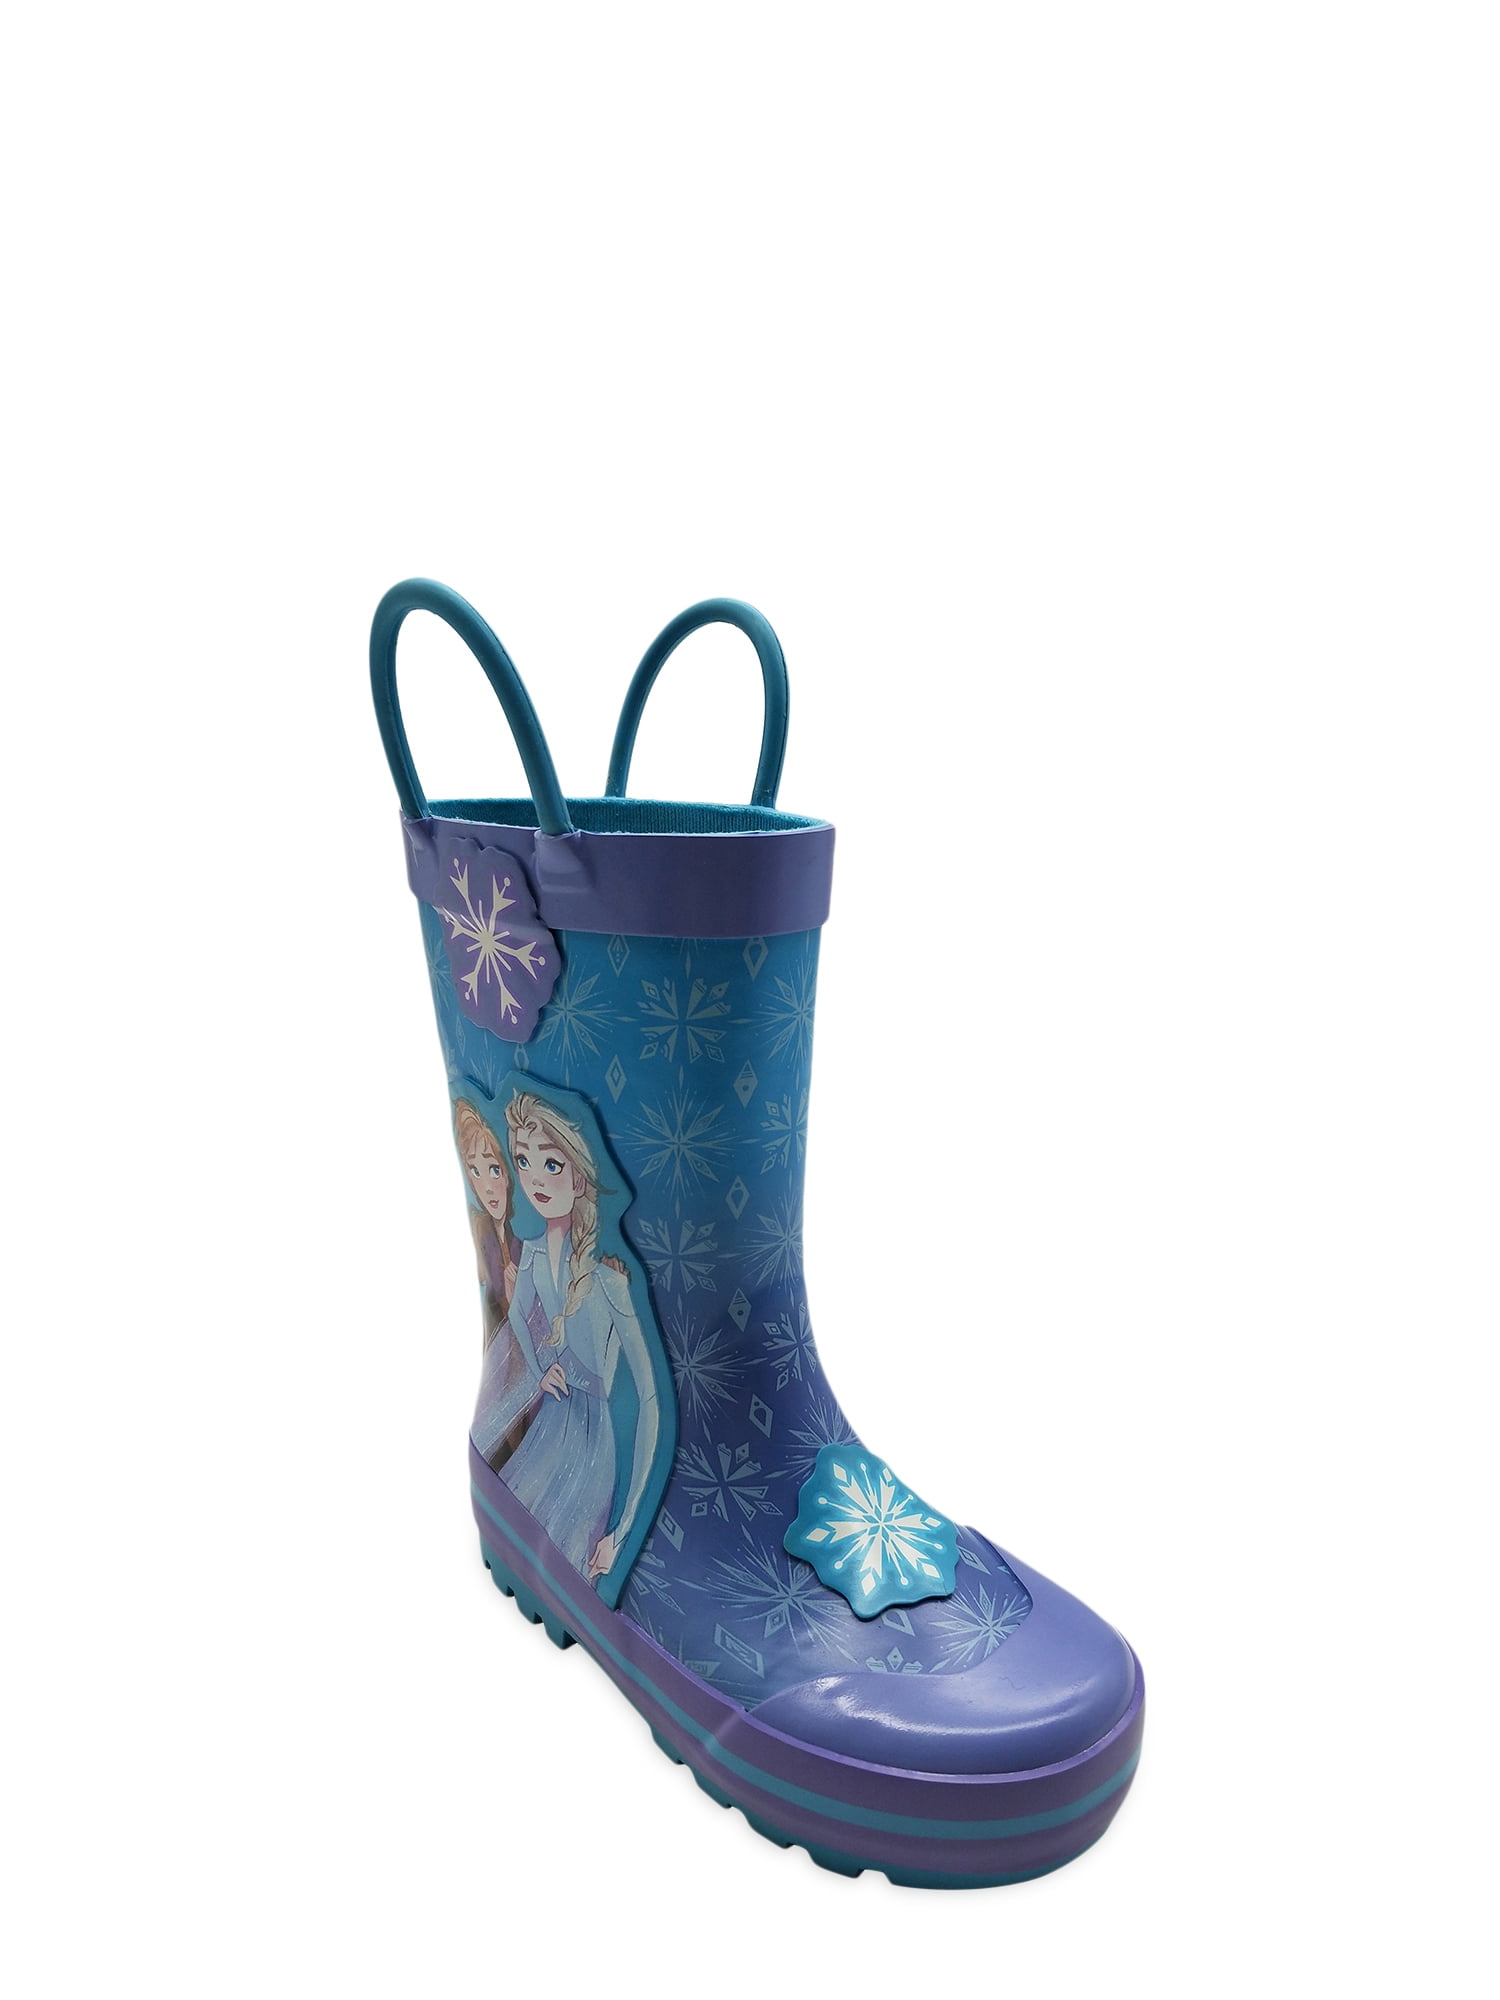 Frozen 2 Disney Frozen Two Handle Rain Boot (Toddler